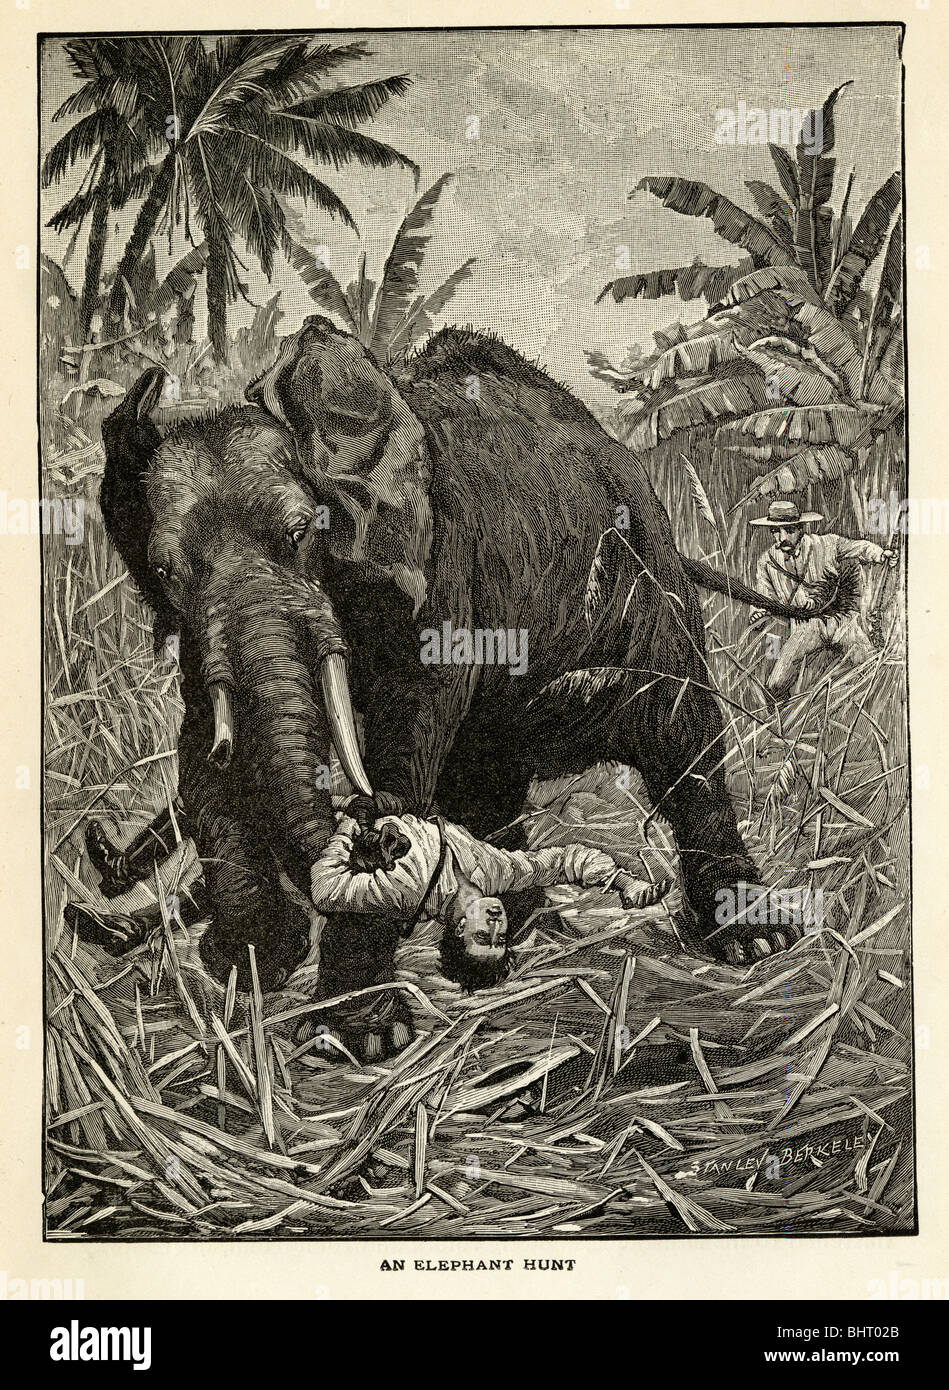 1901 El grabado, la caza del elefante. Un cazador es agarrado en el tronco de un elefante enojado. Grabado original por Stanley Berkeley. Foto de stock